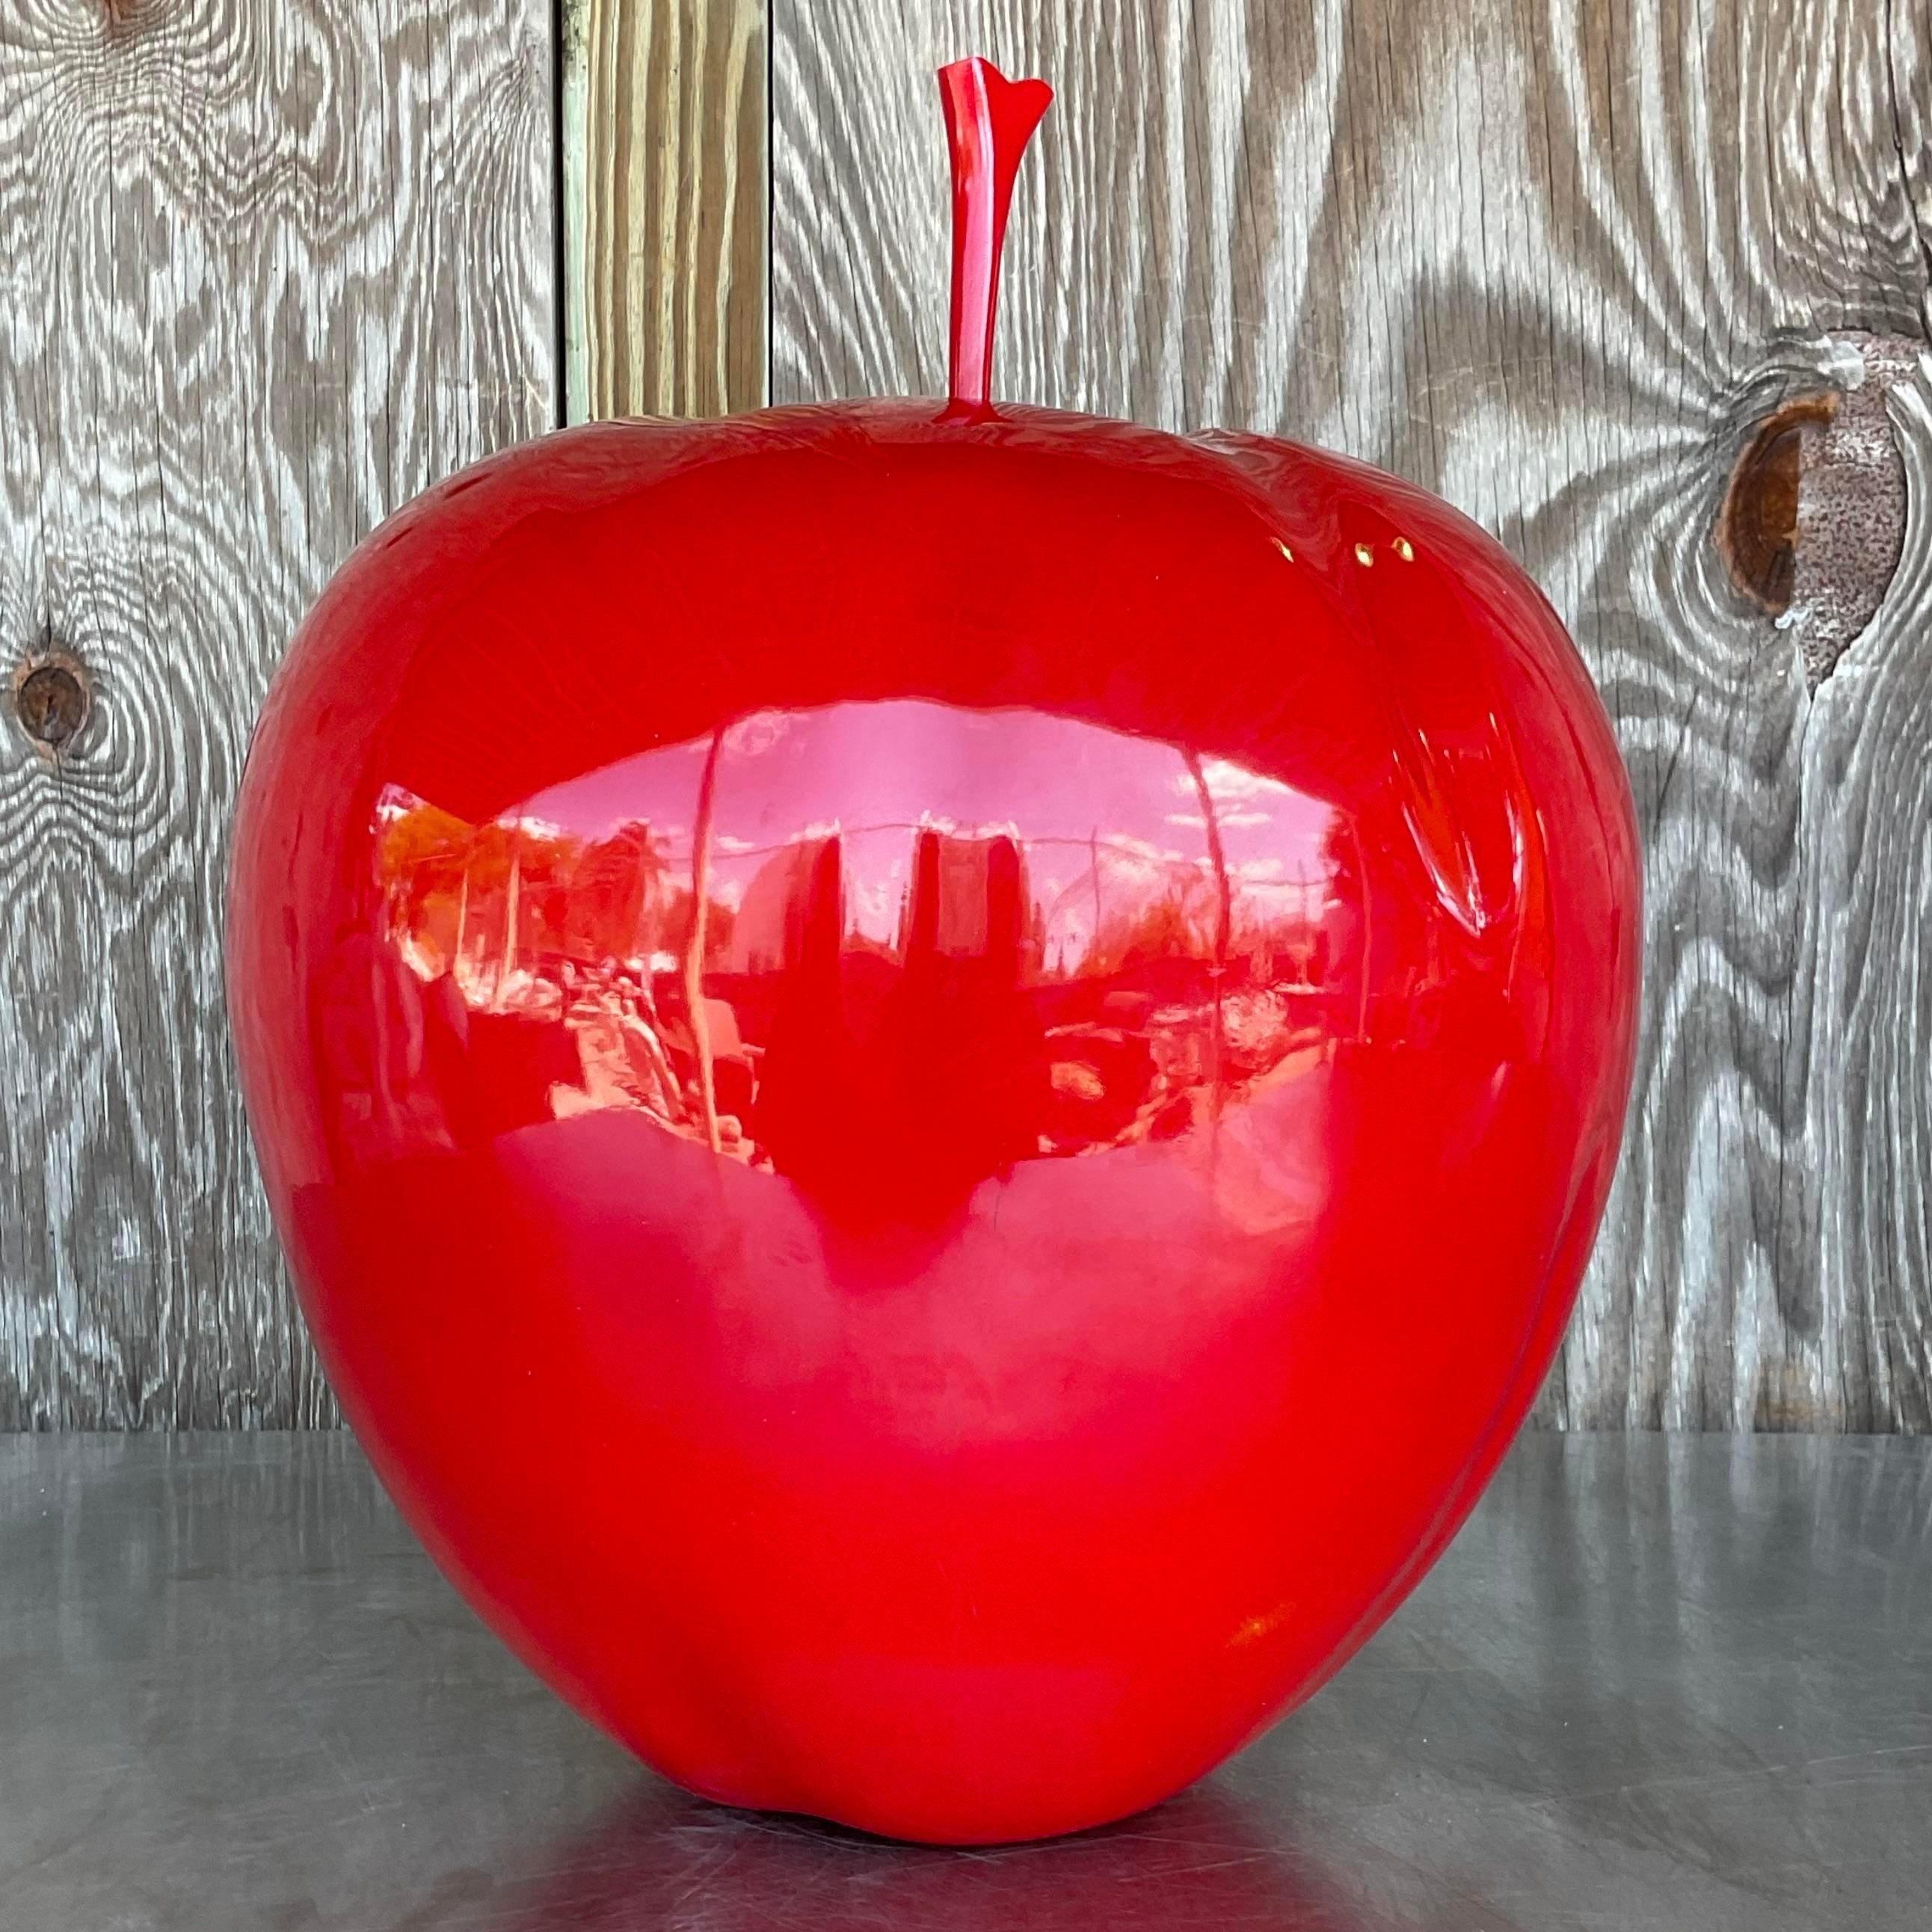 American Vintage Postmodern Monumental Apple For Sale